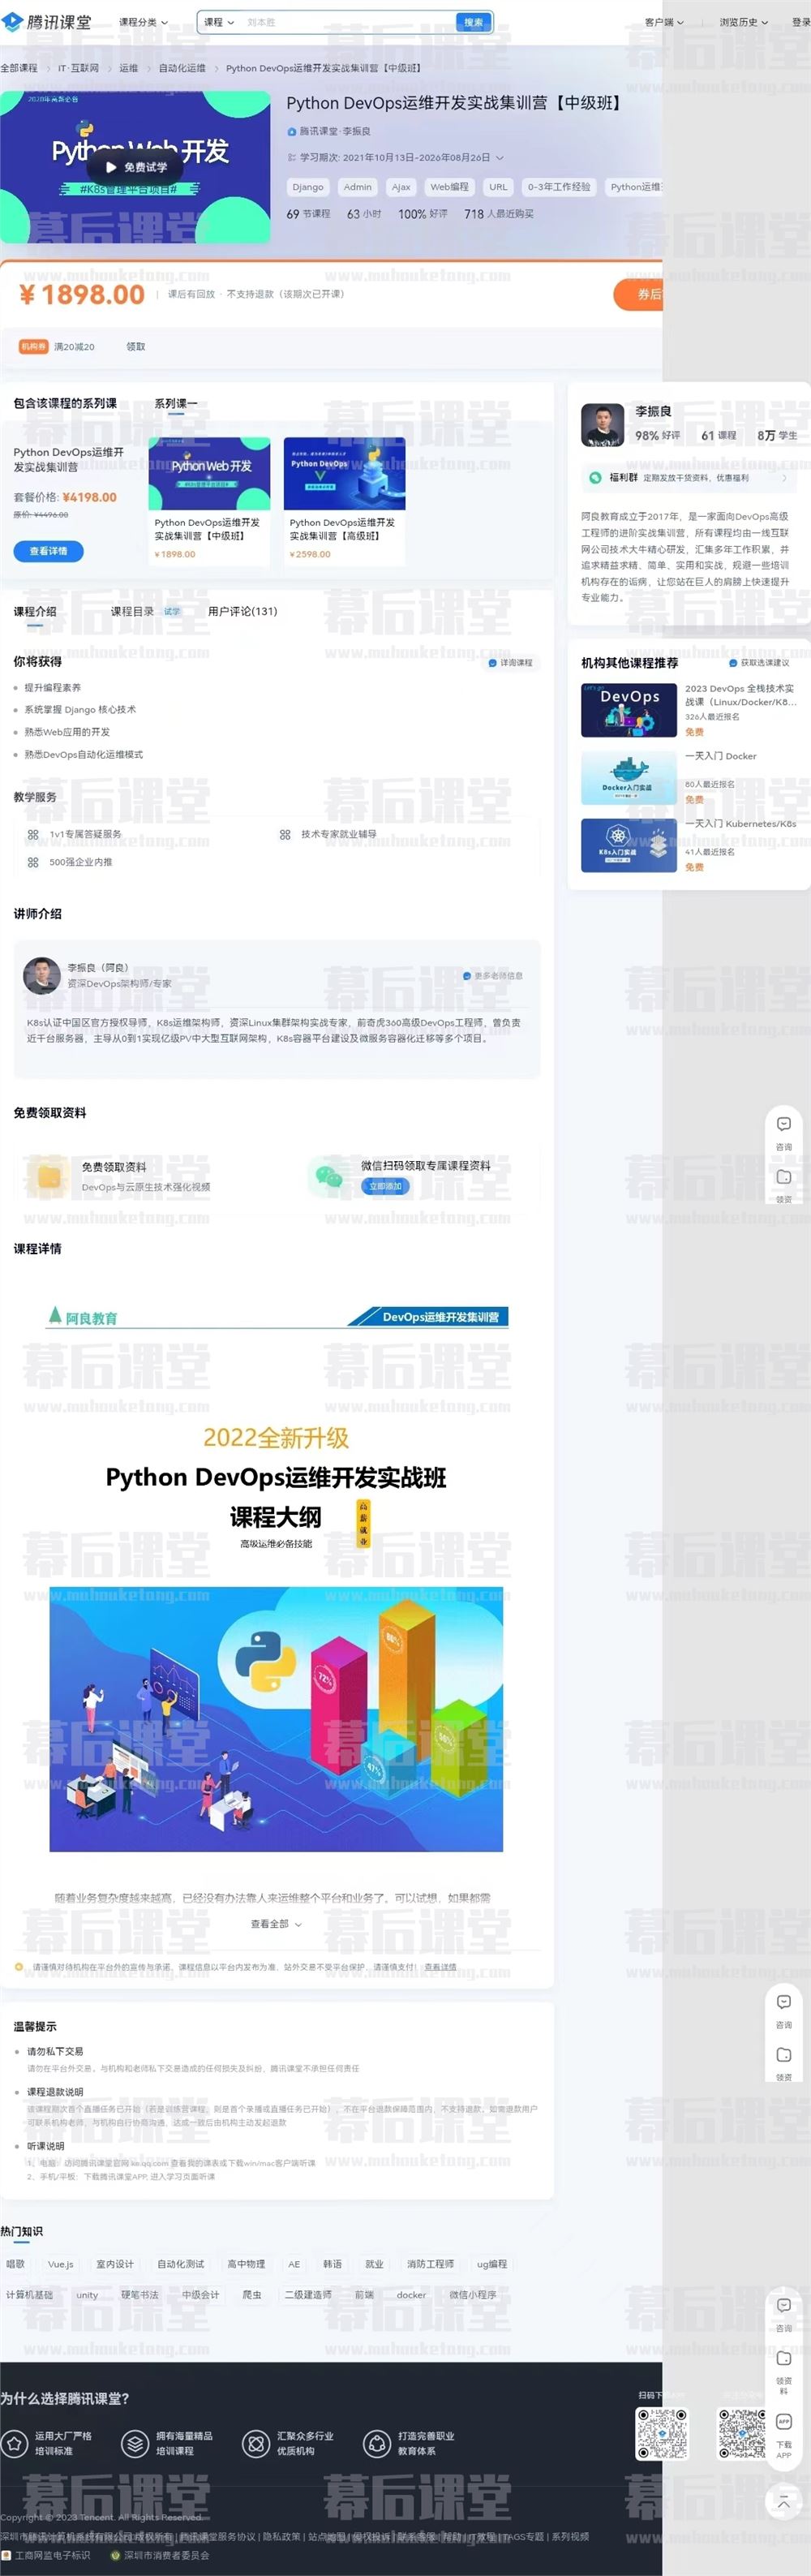 李振良Python DevOps运维开发实战集训营【中级班】视频百度网盘云